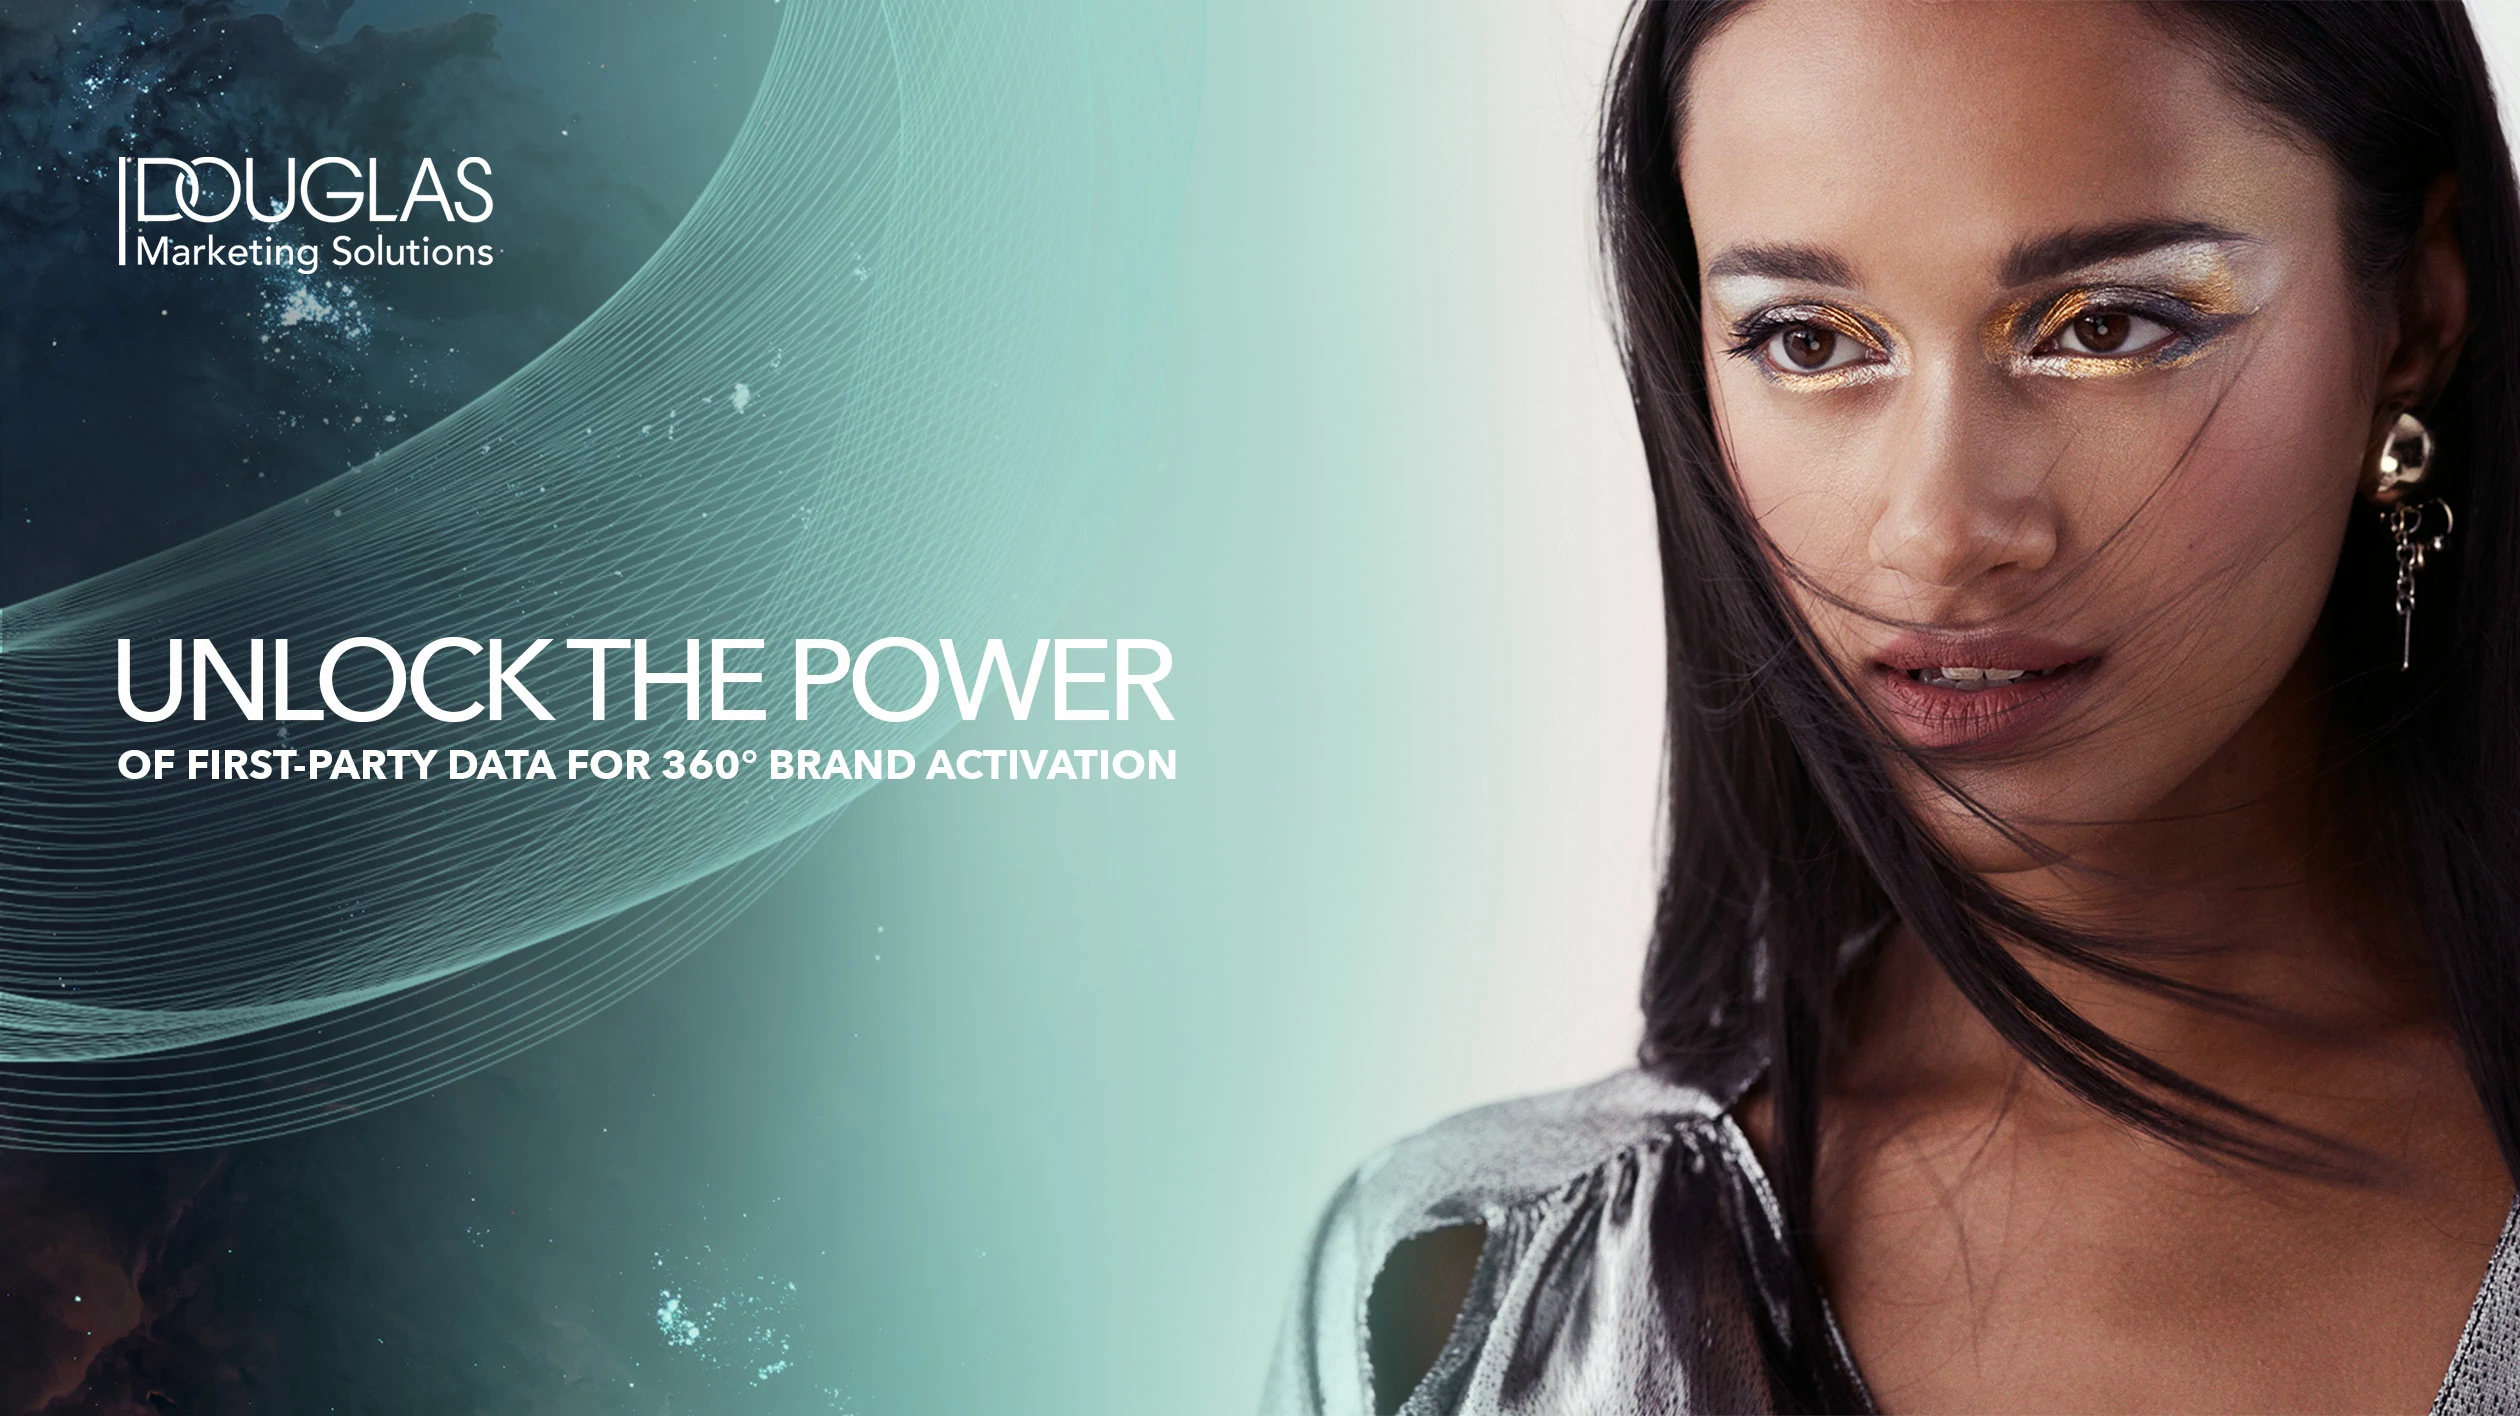 Futuristisch geschminktes Model mit Logo von Douglas Marketing Solutions und dem englischen Text „Unlock the power of first party data for 360° brand activation”